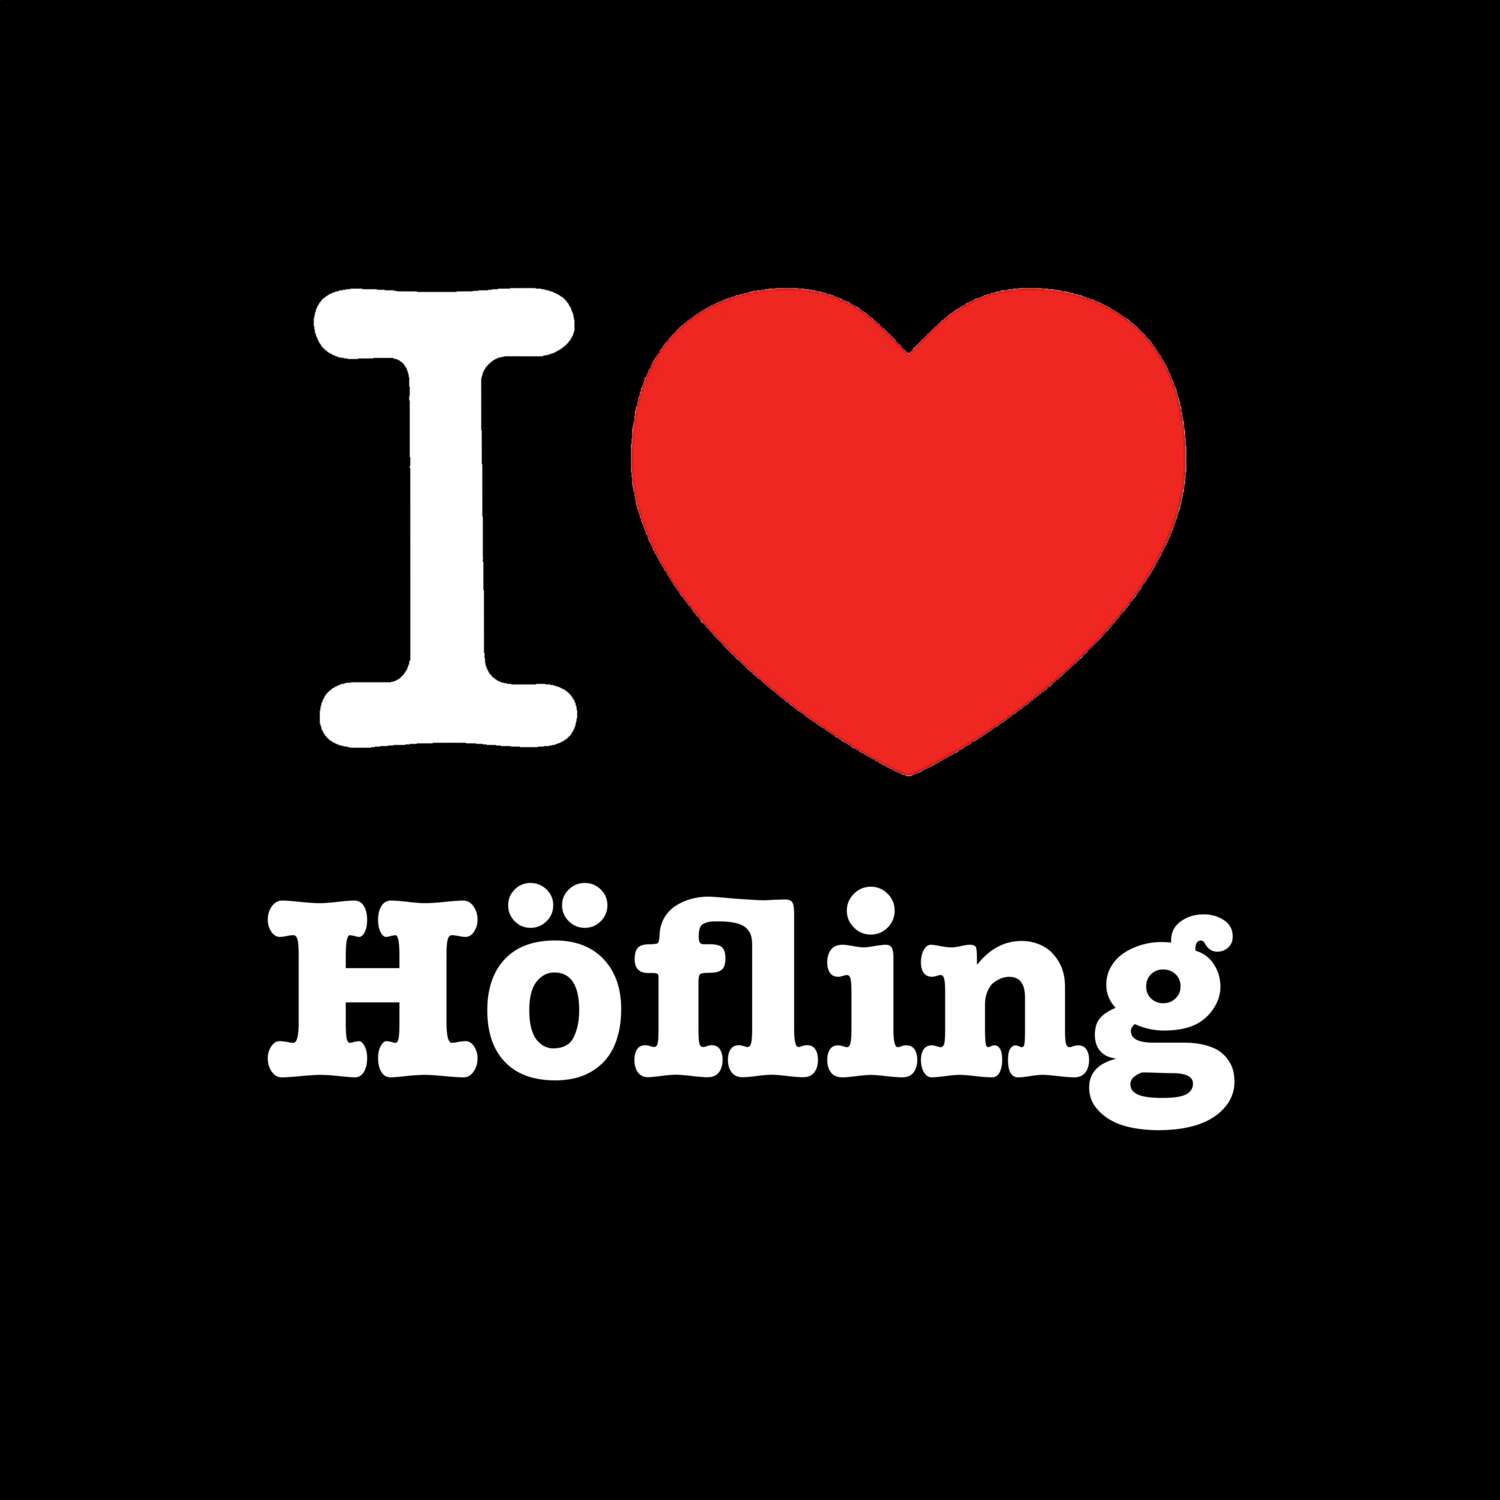 Höfling T-Shirt »I love«